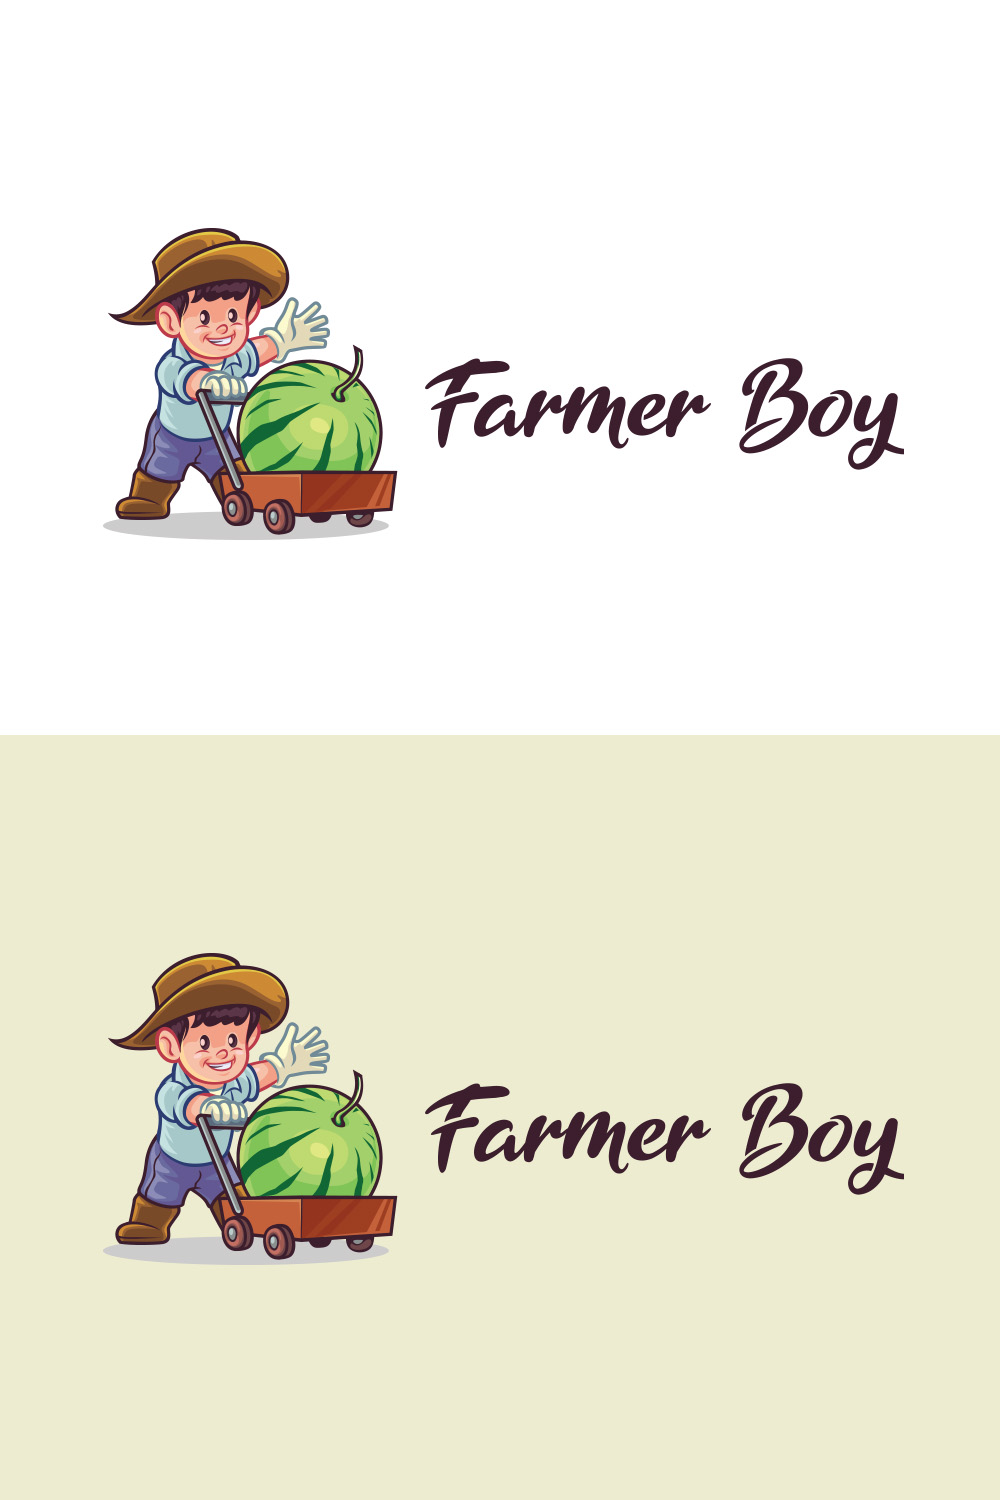 Farmer Boy pinterest preview image.